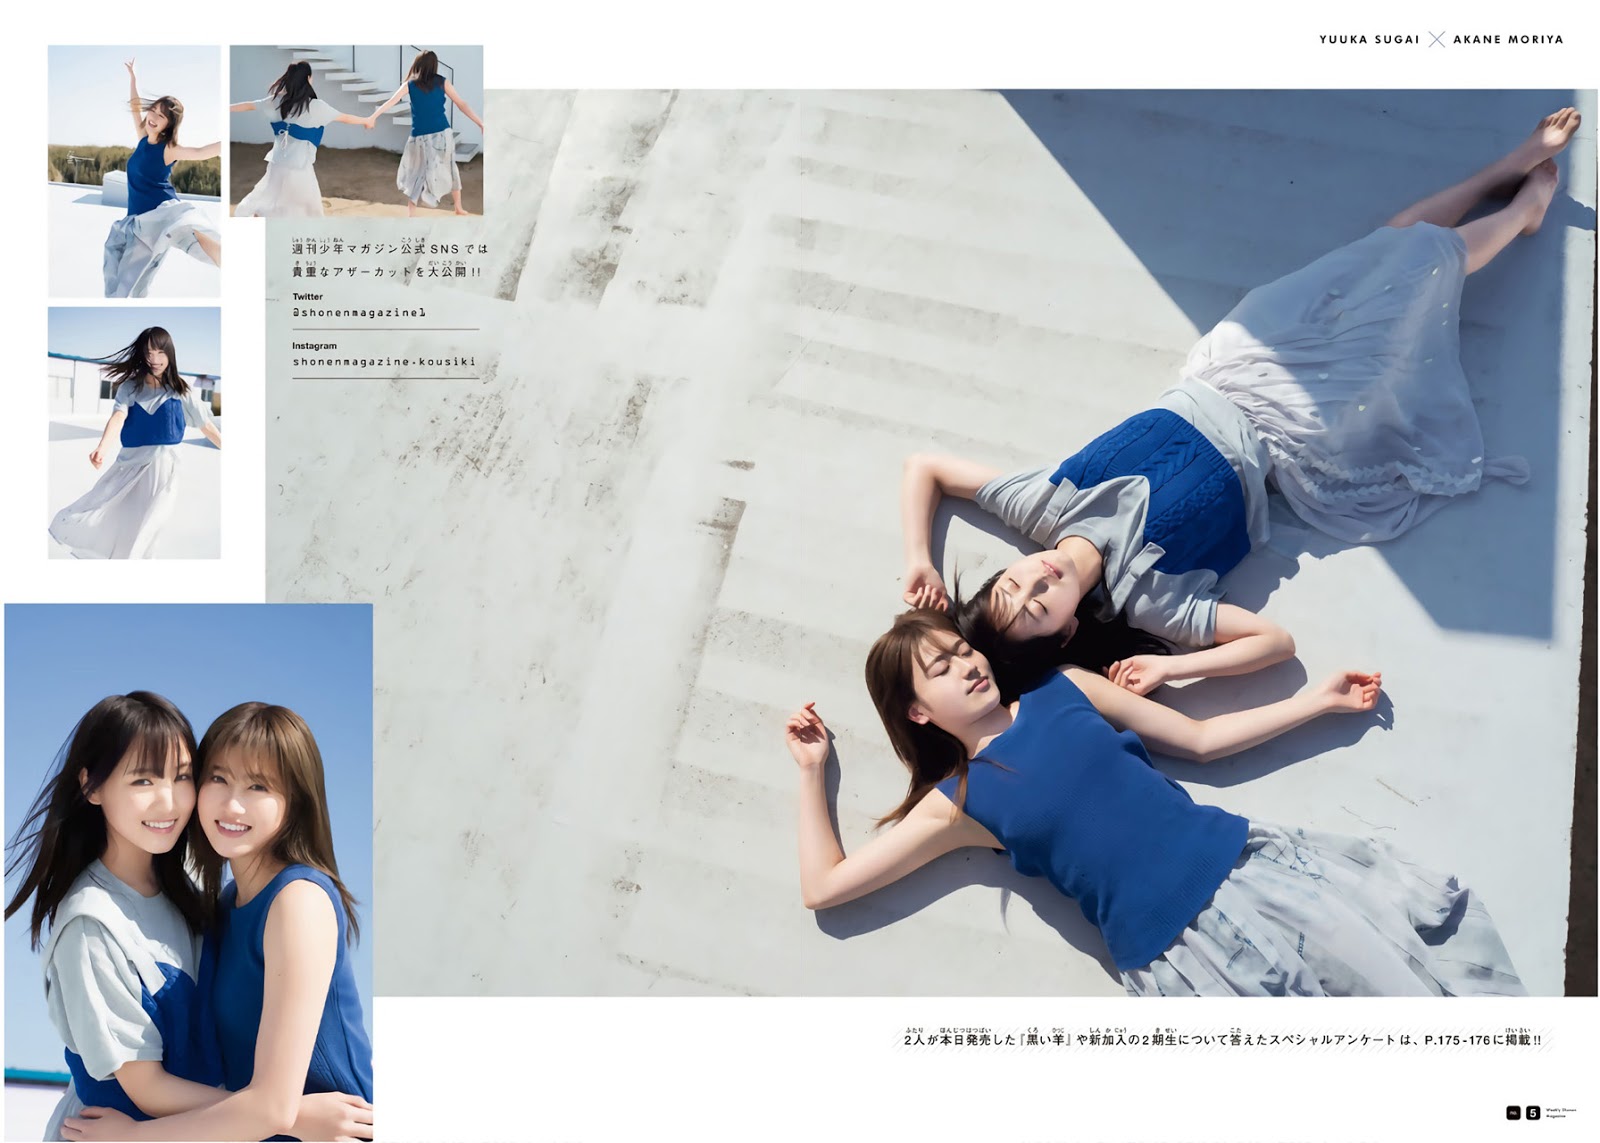 Yuuka Sugai 菅井友香, Akane Moriya 守屋茜, Shonen Magazine 2019 No.13 (少年マガジン 2019年13号)